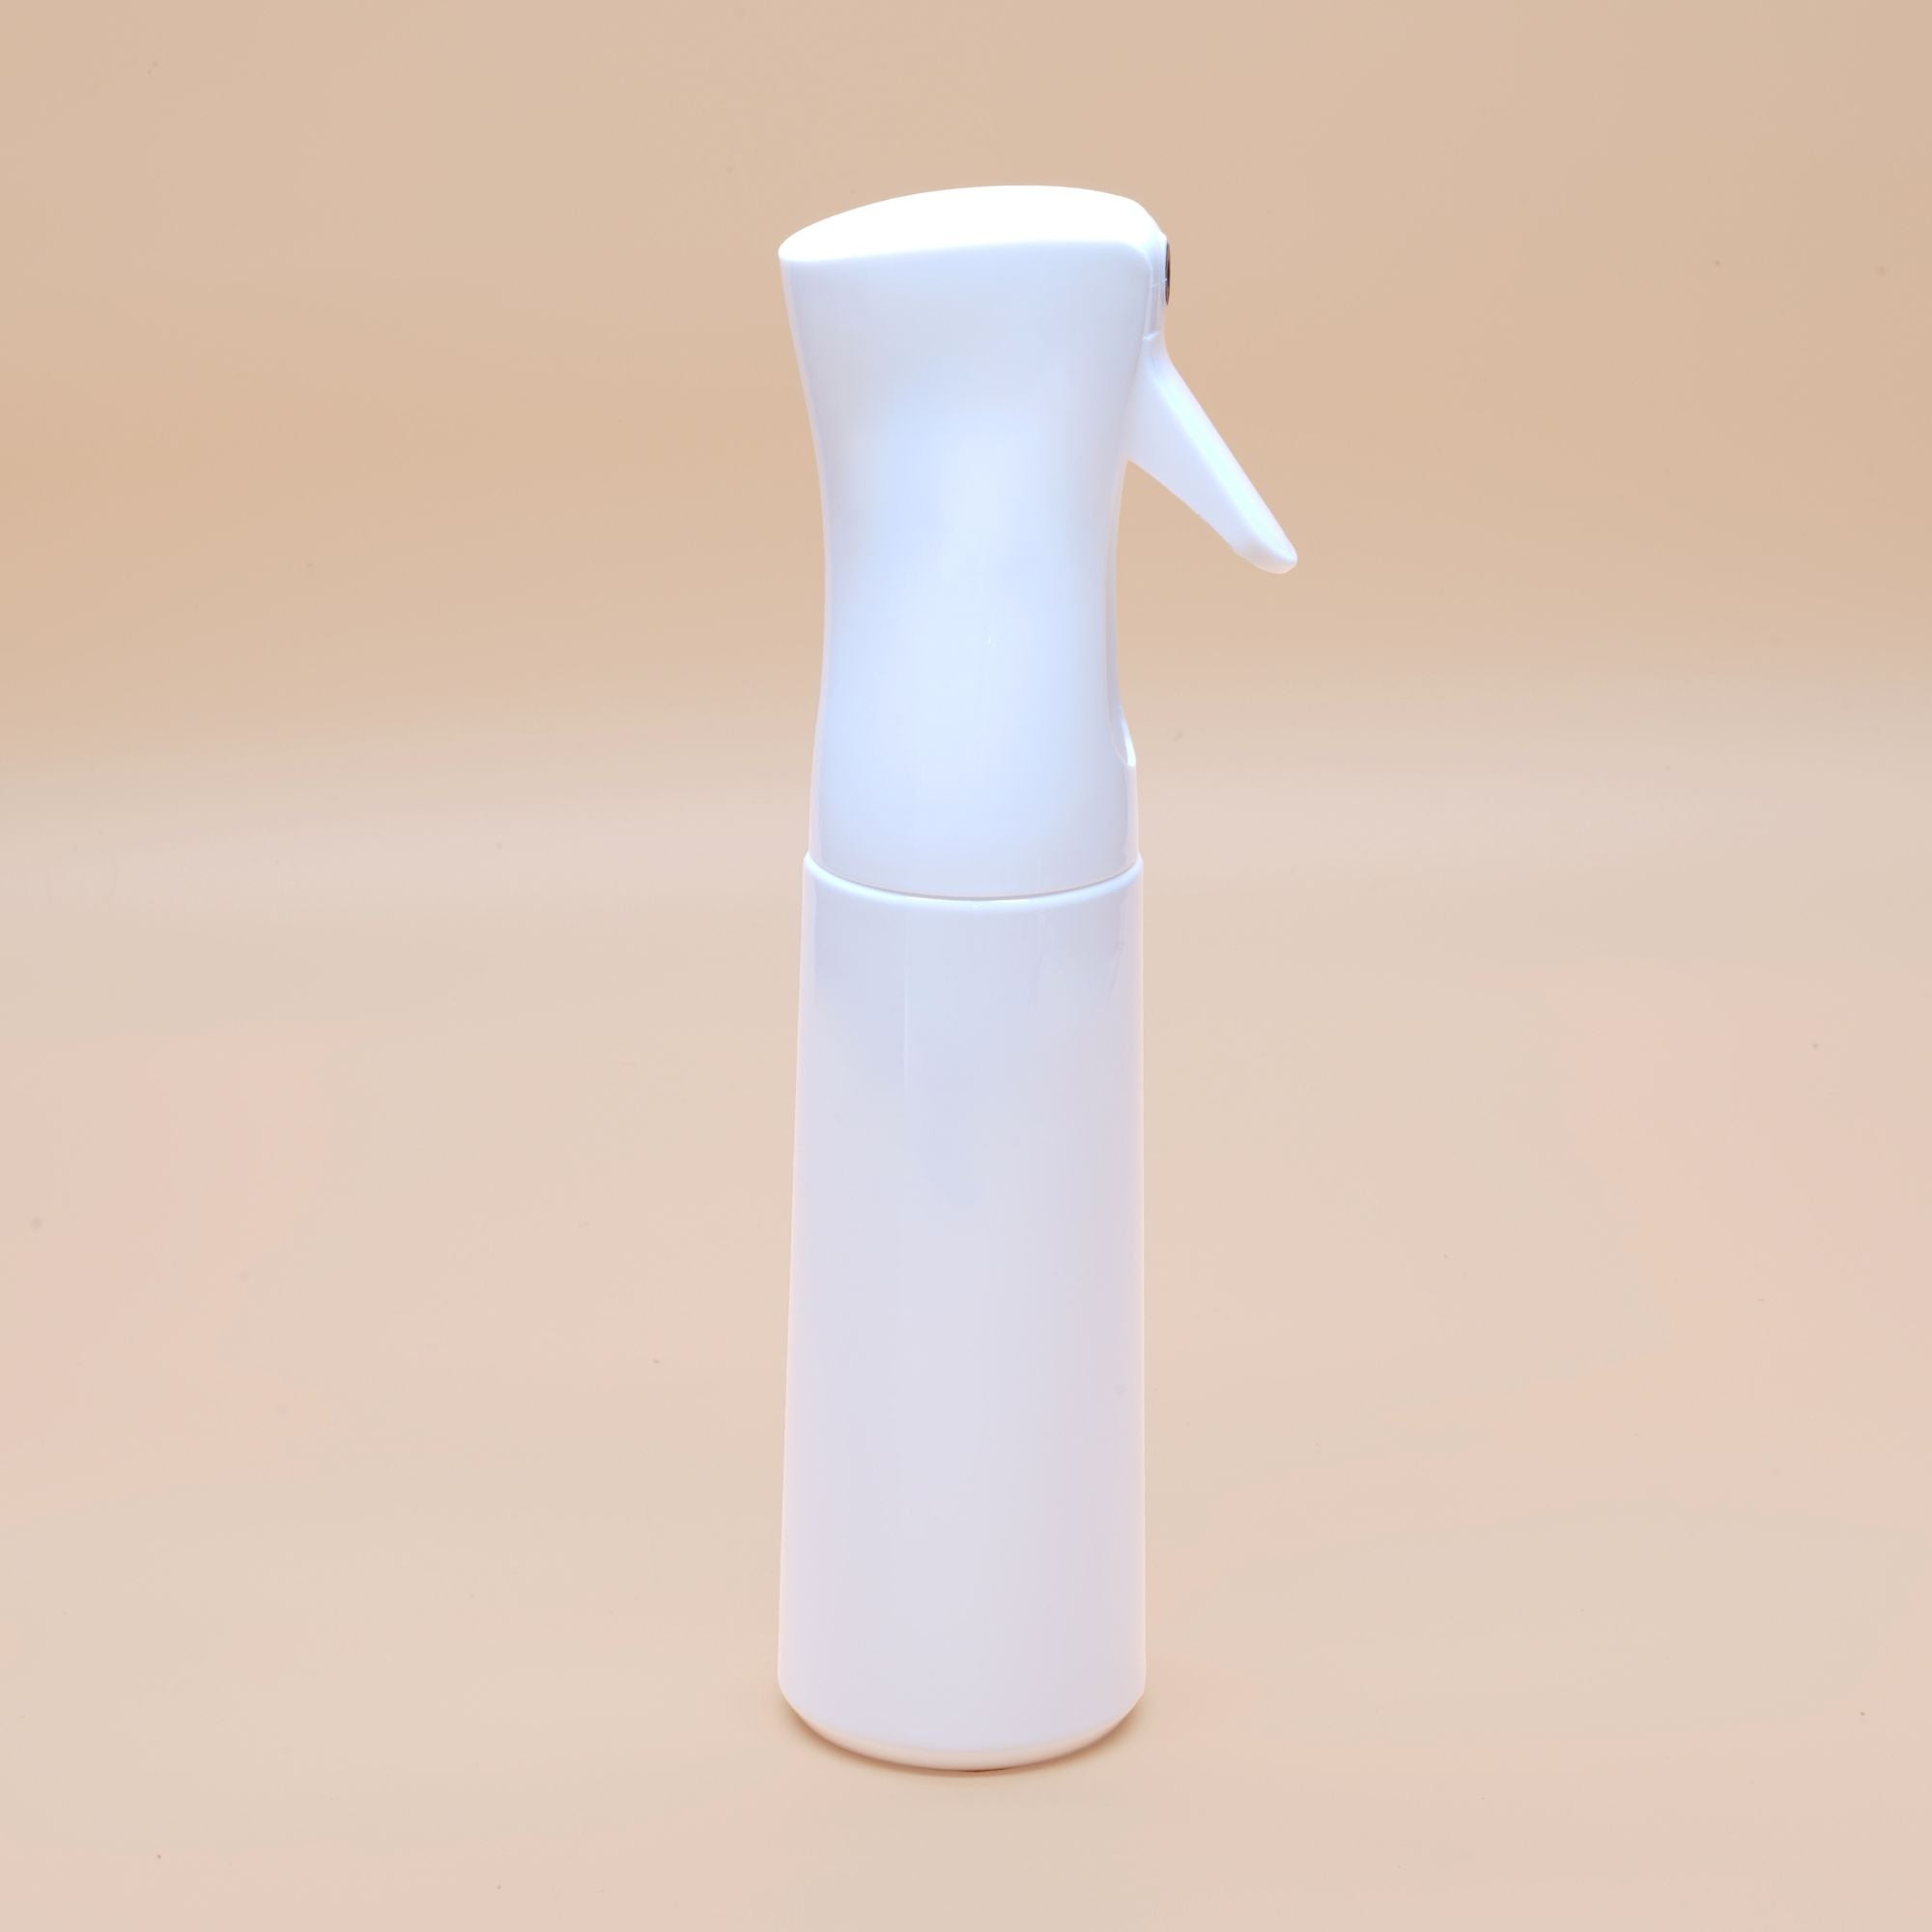 Spray Bottle Mister ◦ 300 ml